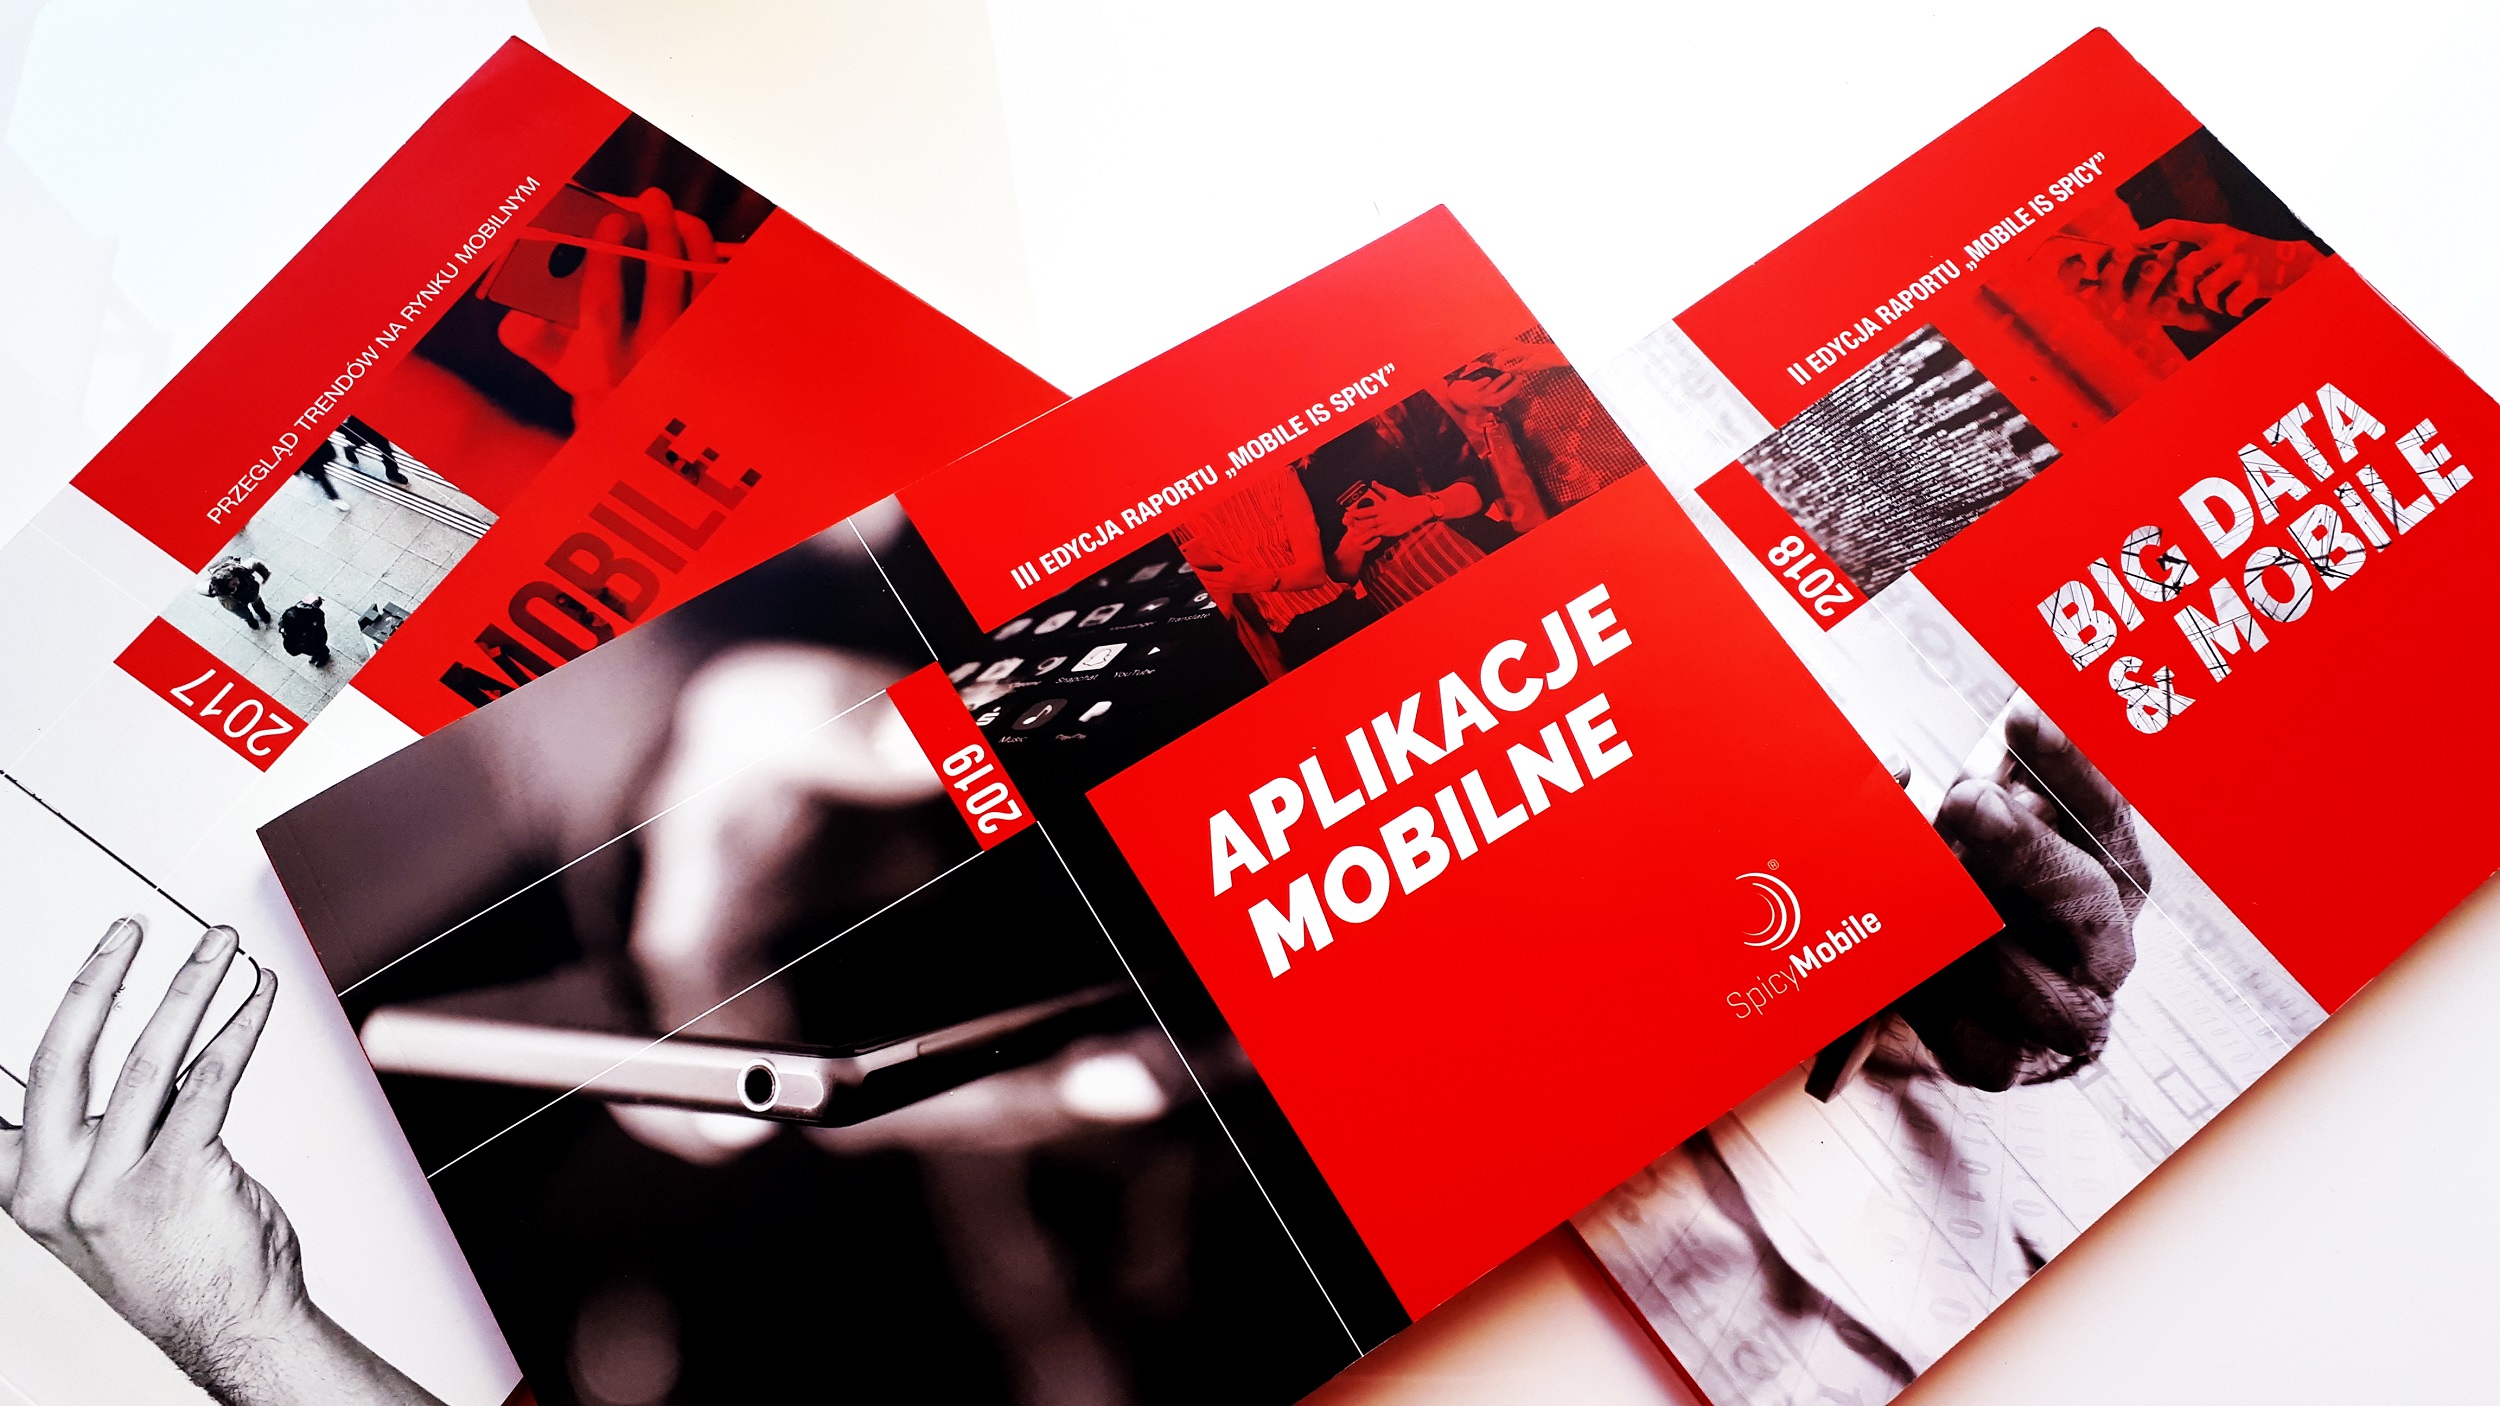 Aplikacje mobilne. Nowy raport Spicy Mobile dla twórców i wydawców